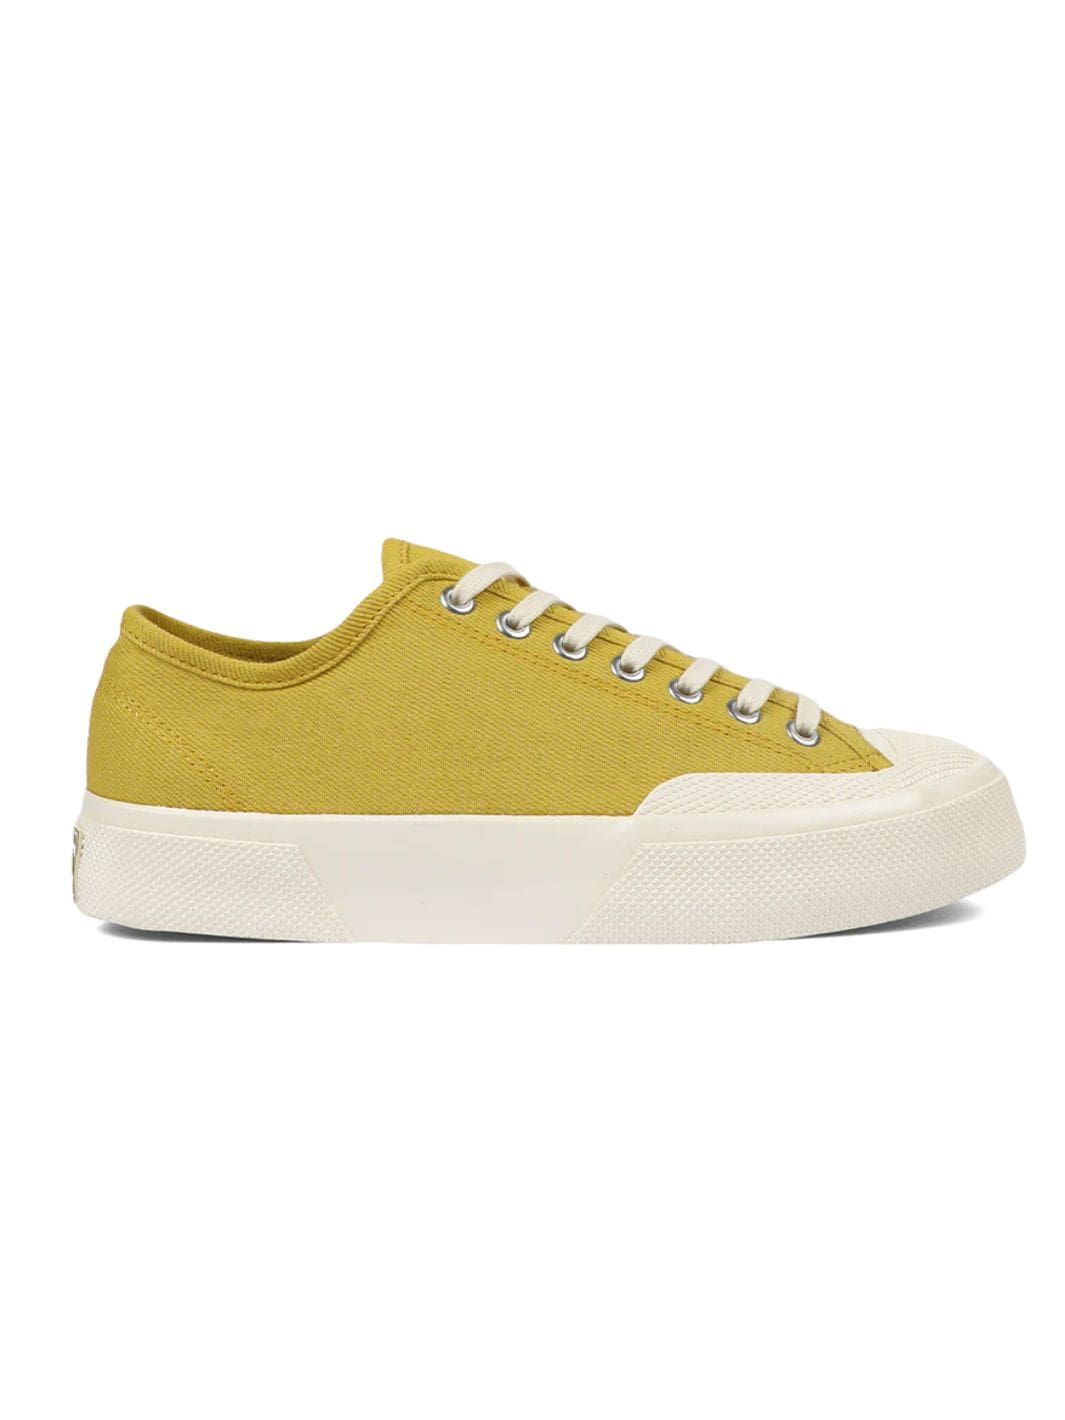 Superga Shoes Sneakers | Artifact 2432 Workwear Denim Yellow